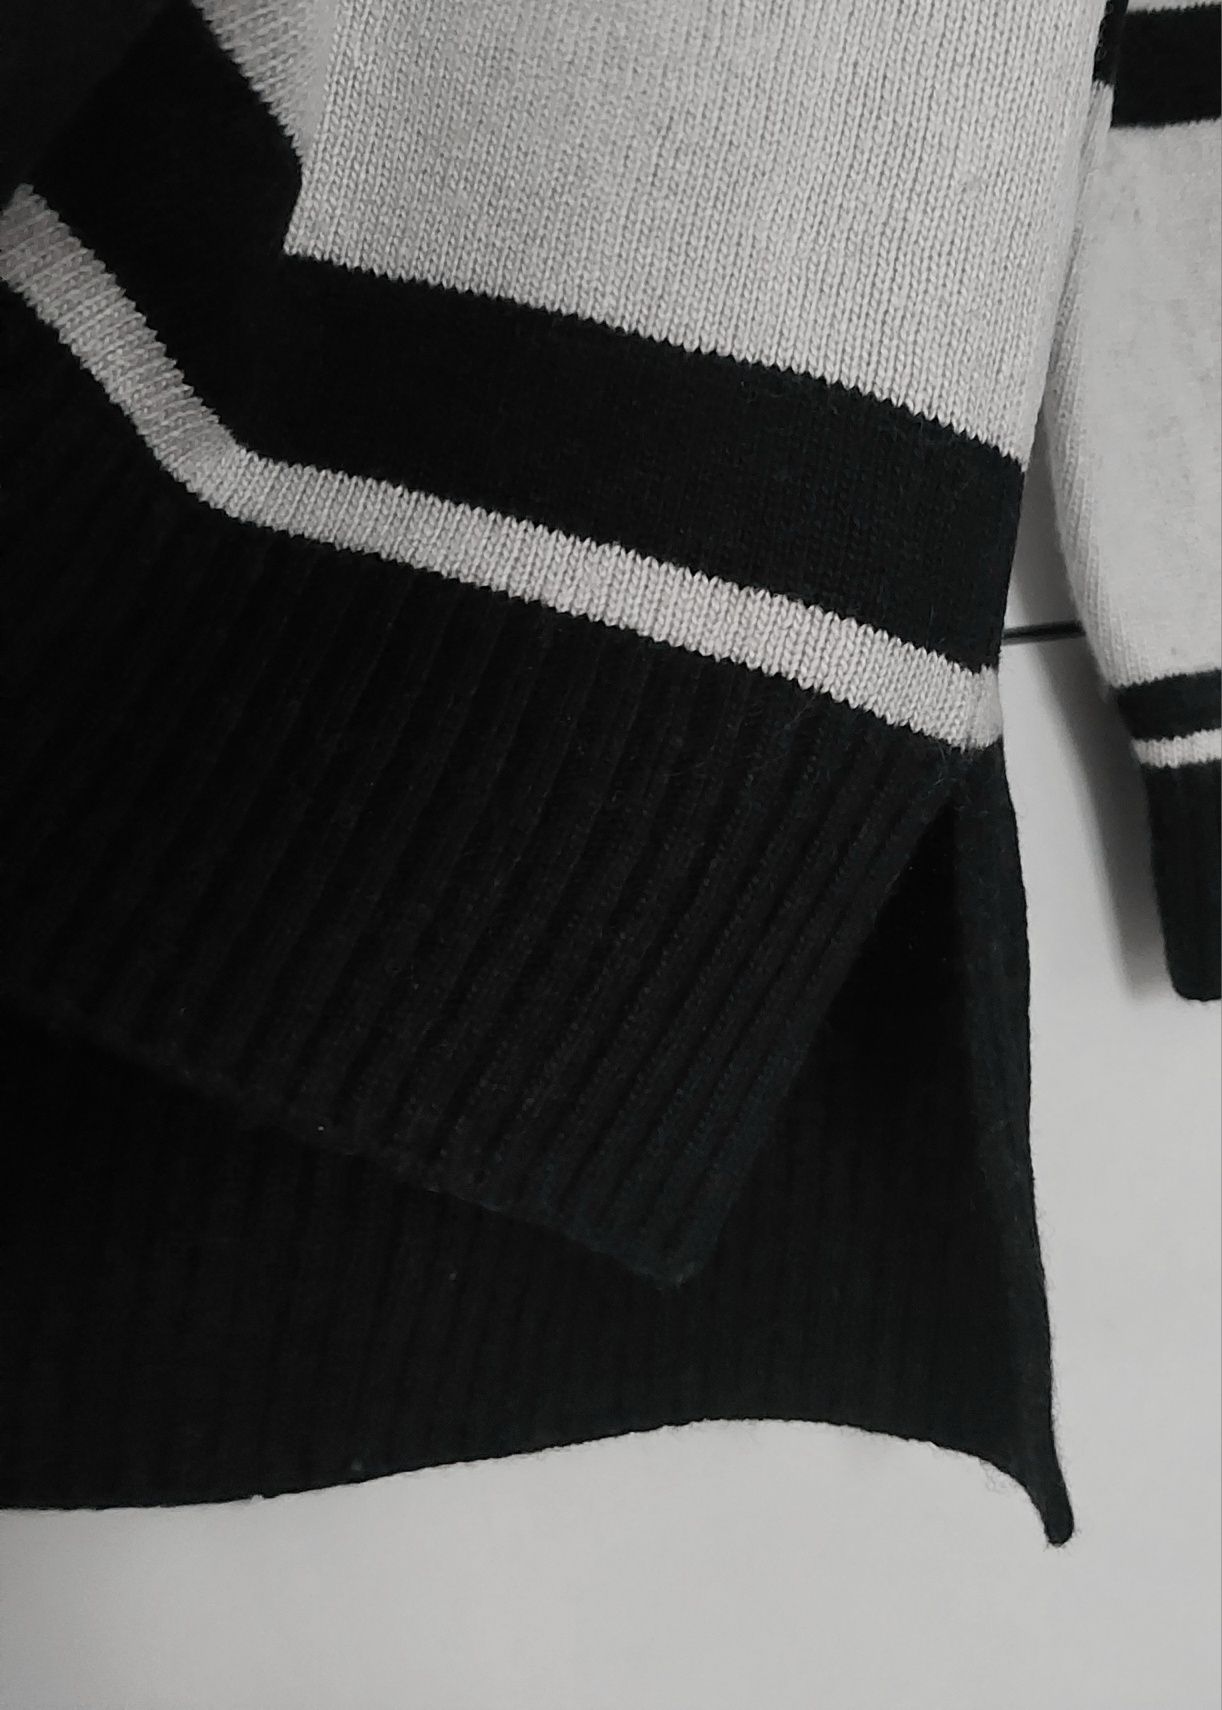 Sweter Massimo dutti 38 M w paski pasiak czarny wełniany kaszmirowy